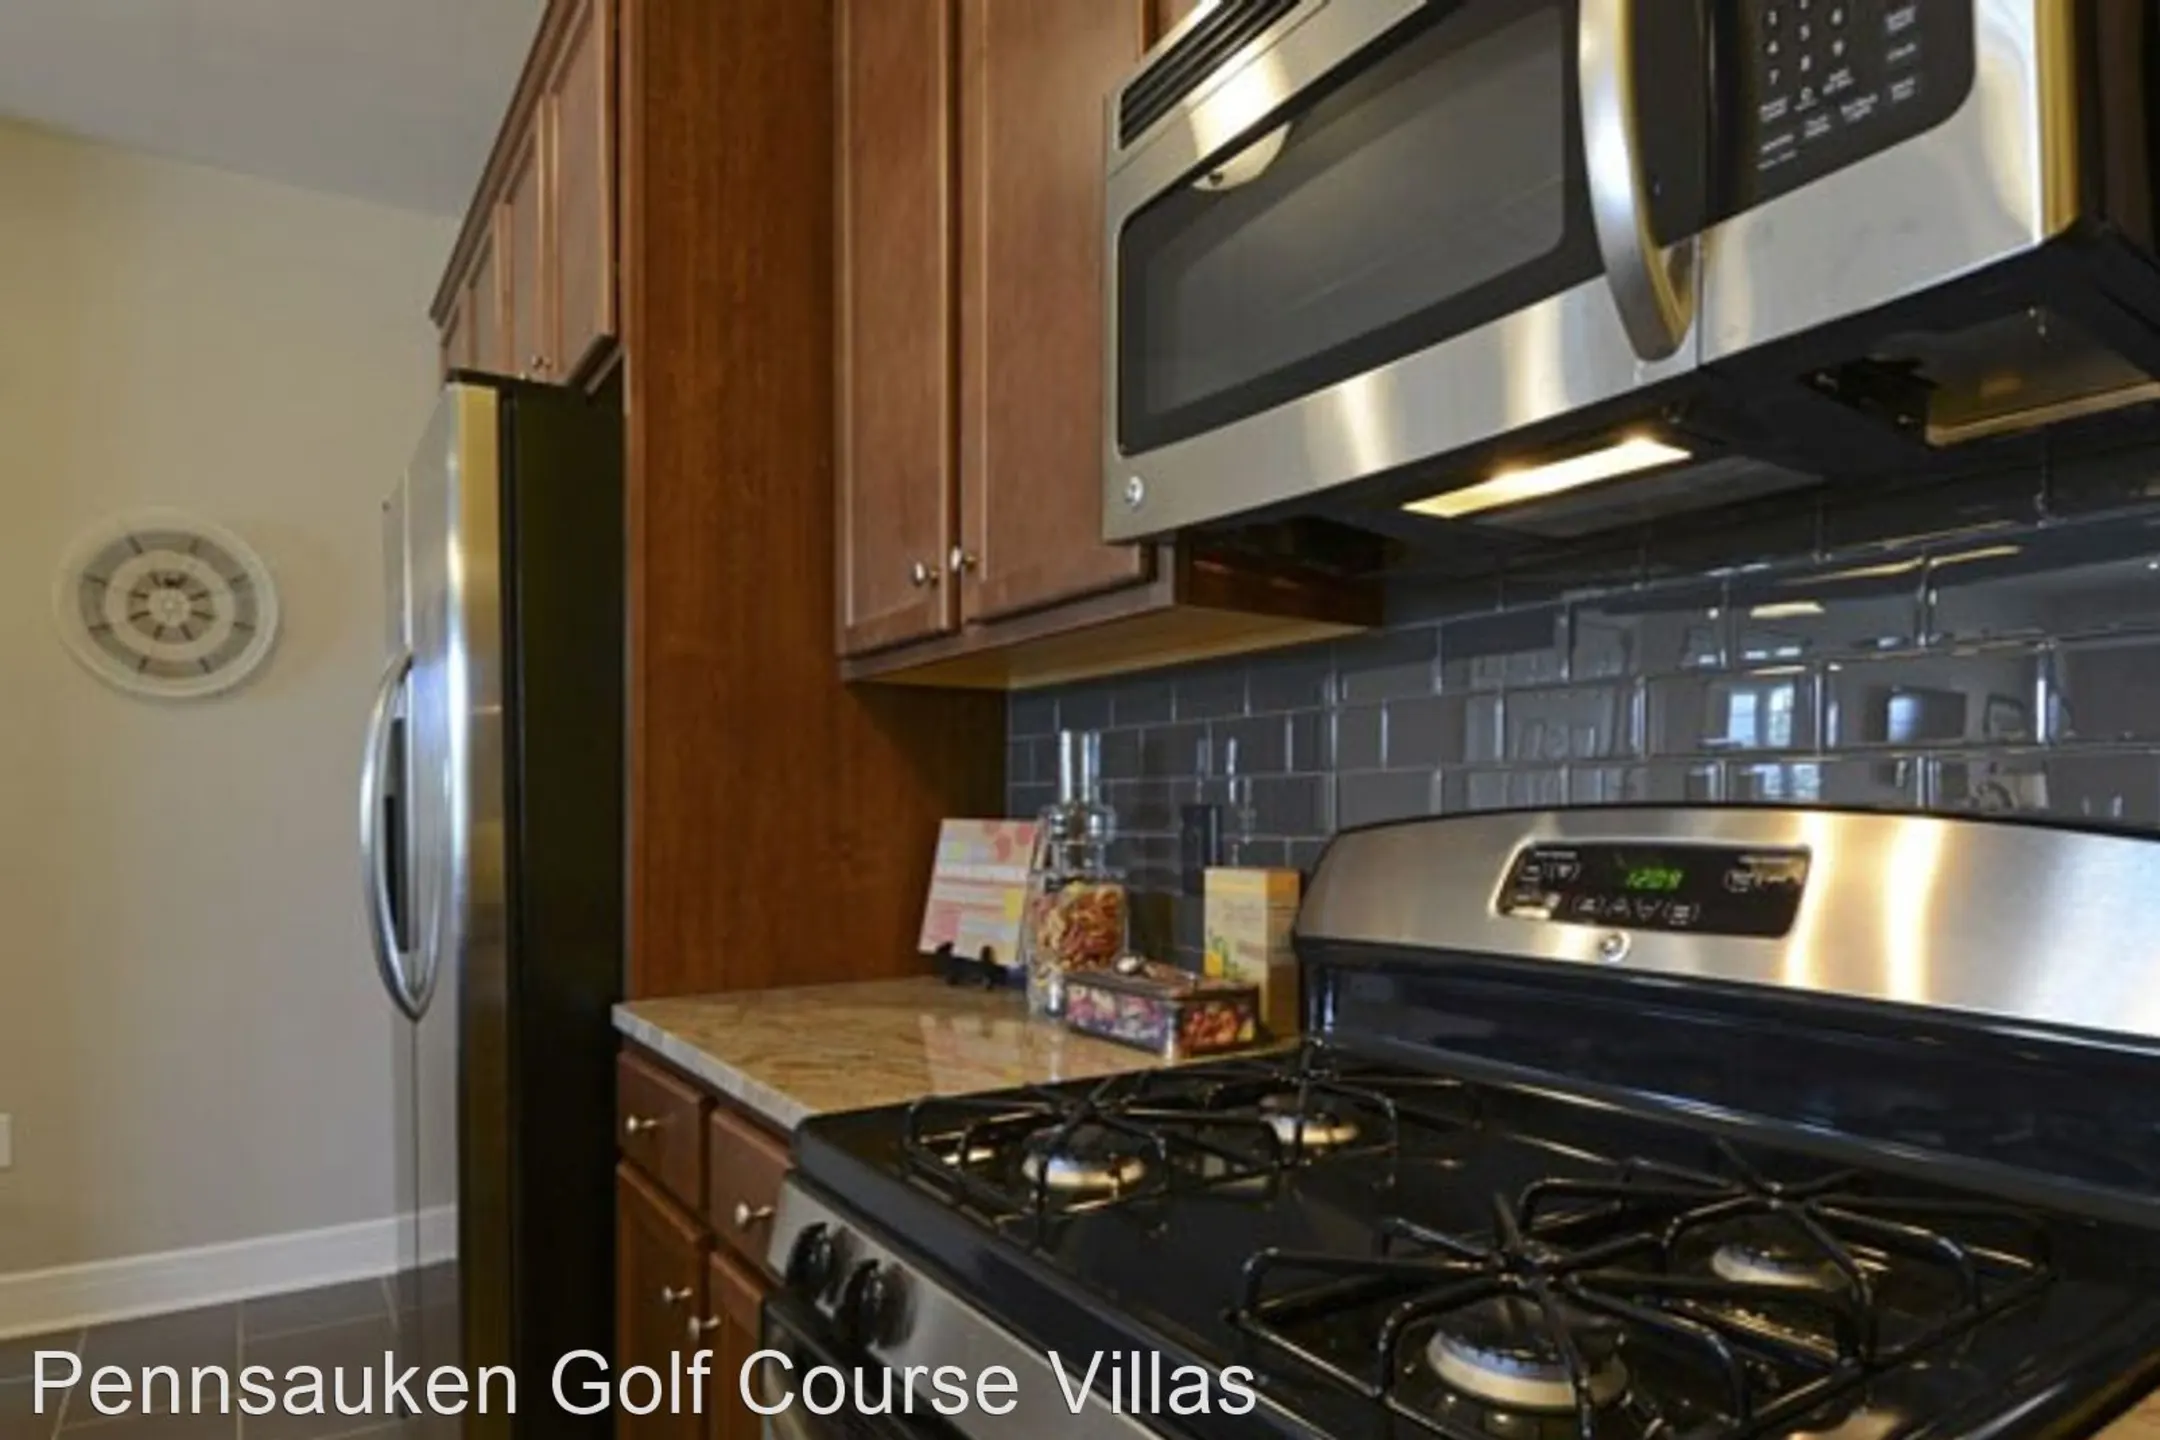 Kitchen - Pennsauken Golf Course Villas - Pennsauken, NJ